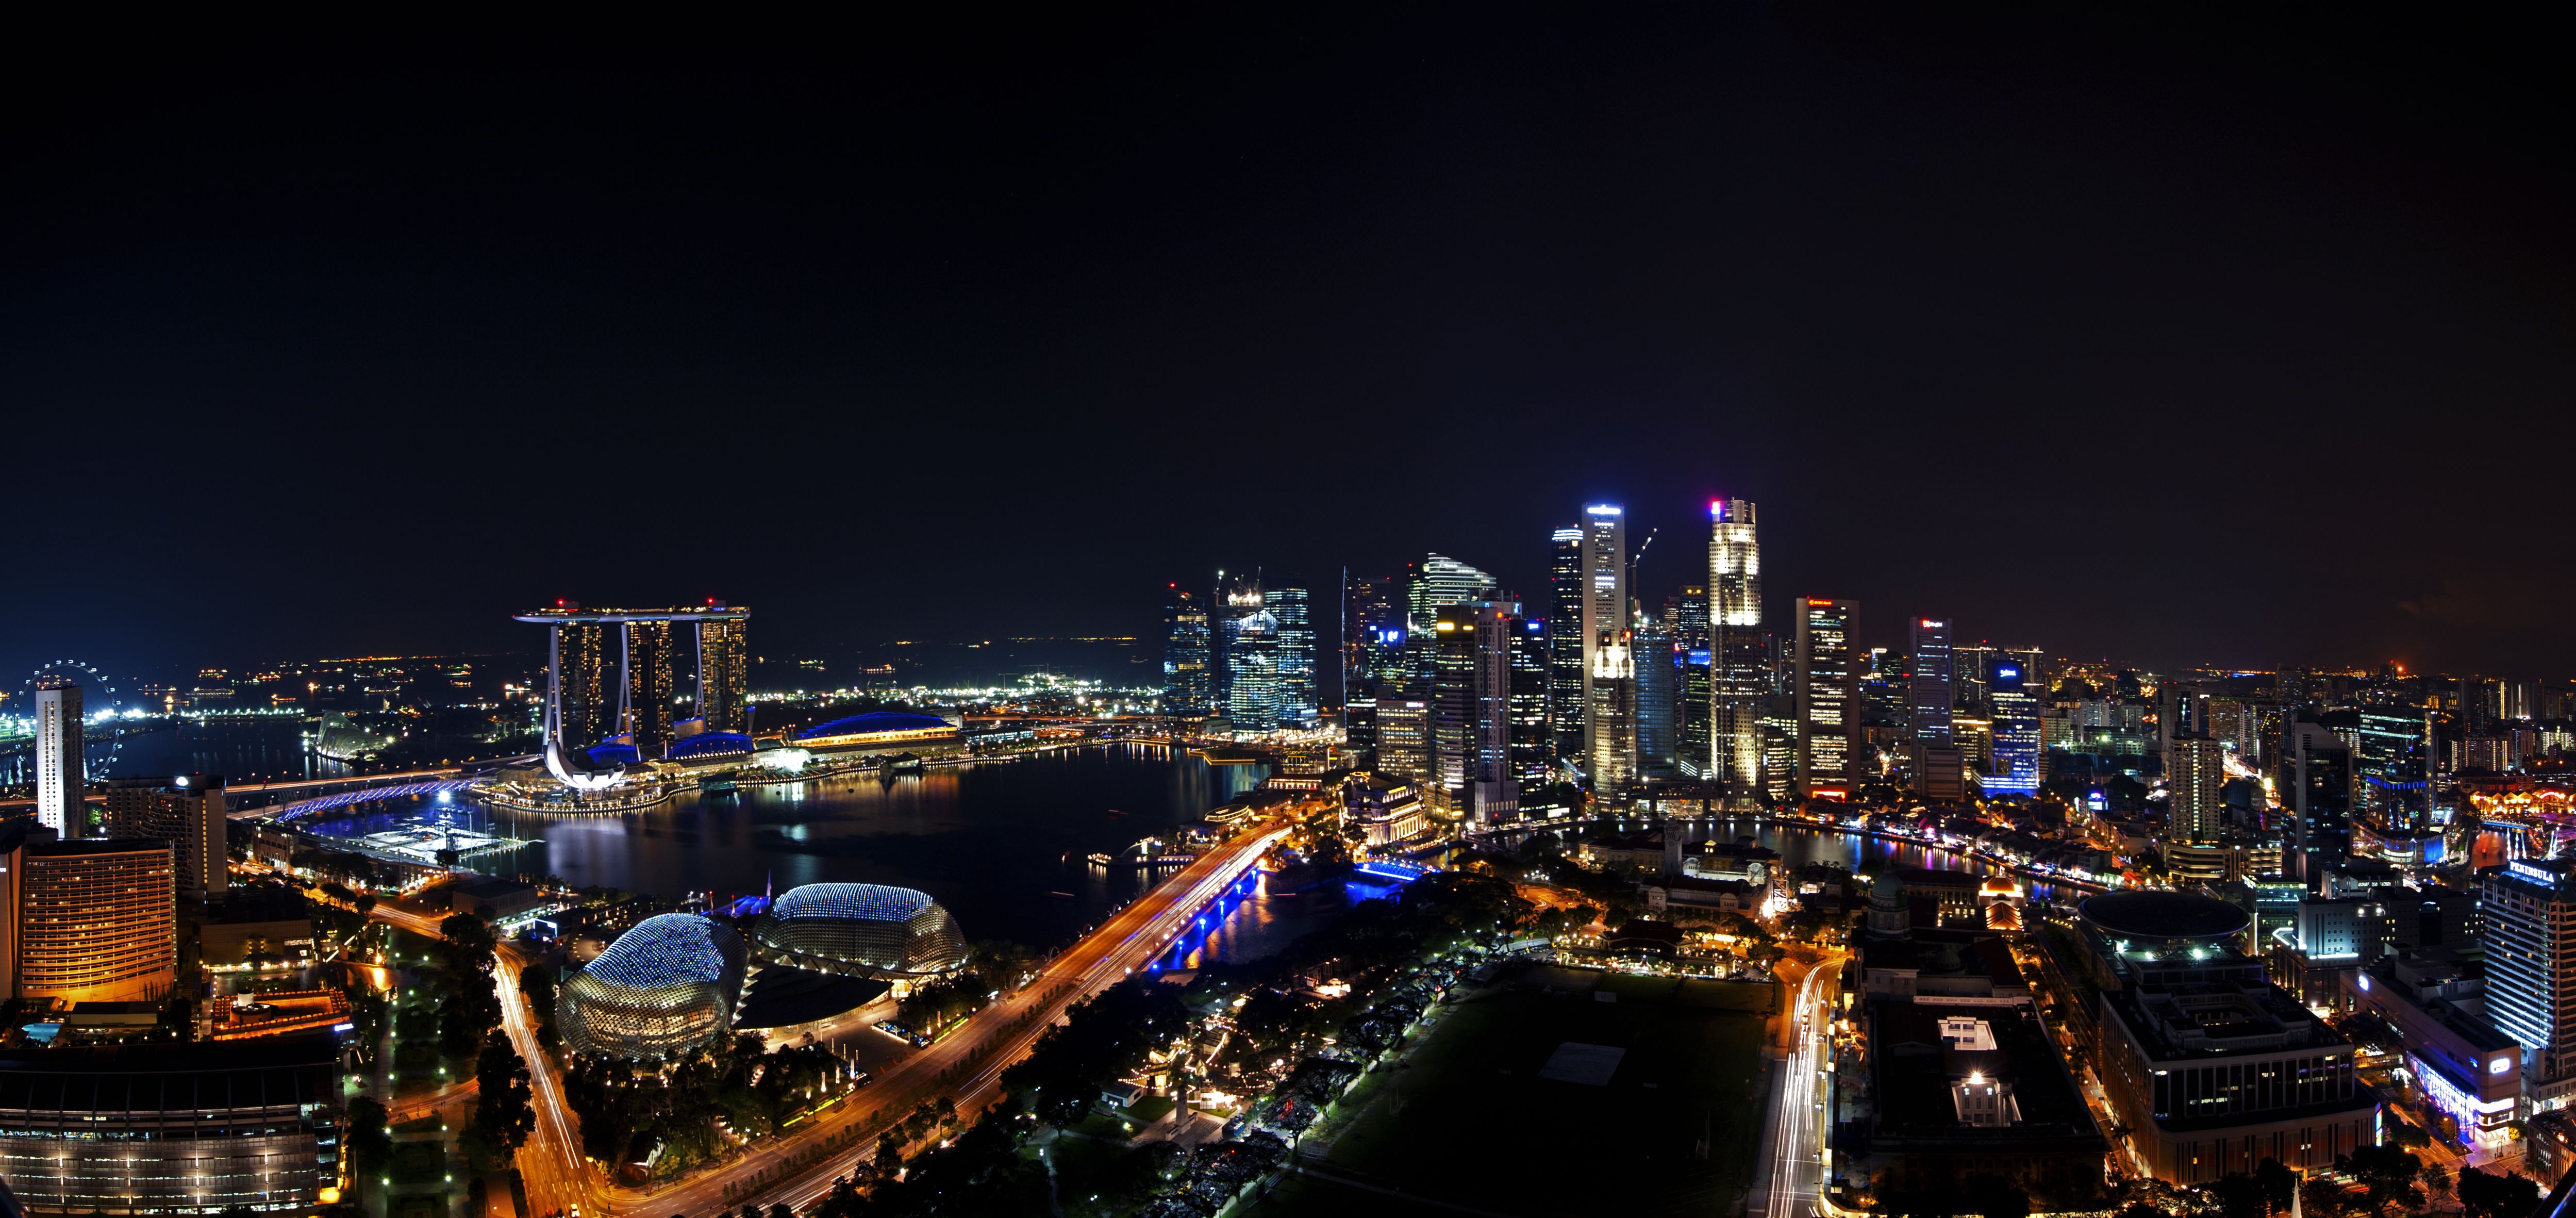 Singapore from the night sky. Tokyo skyline